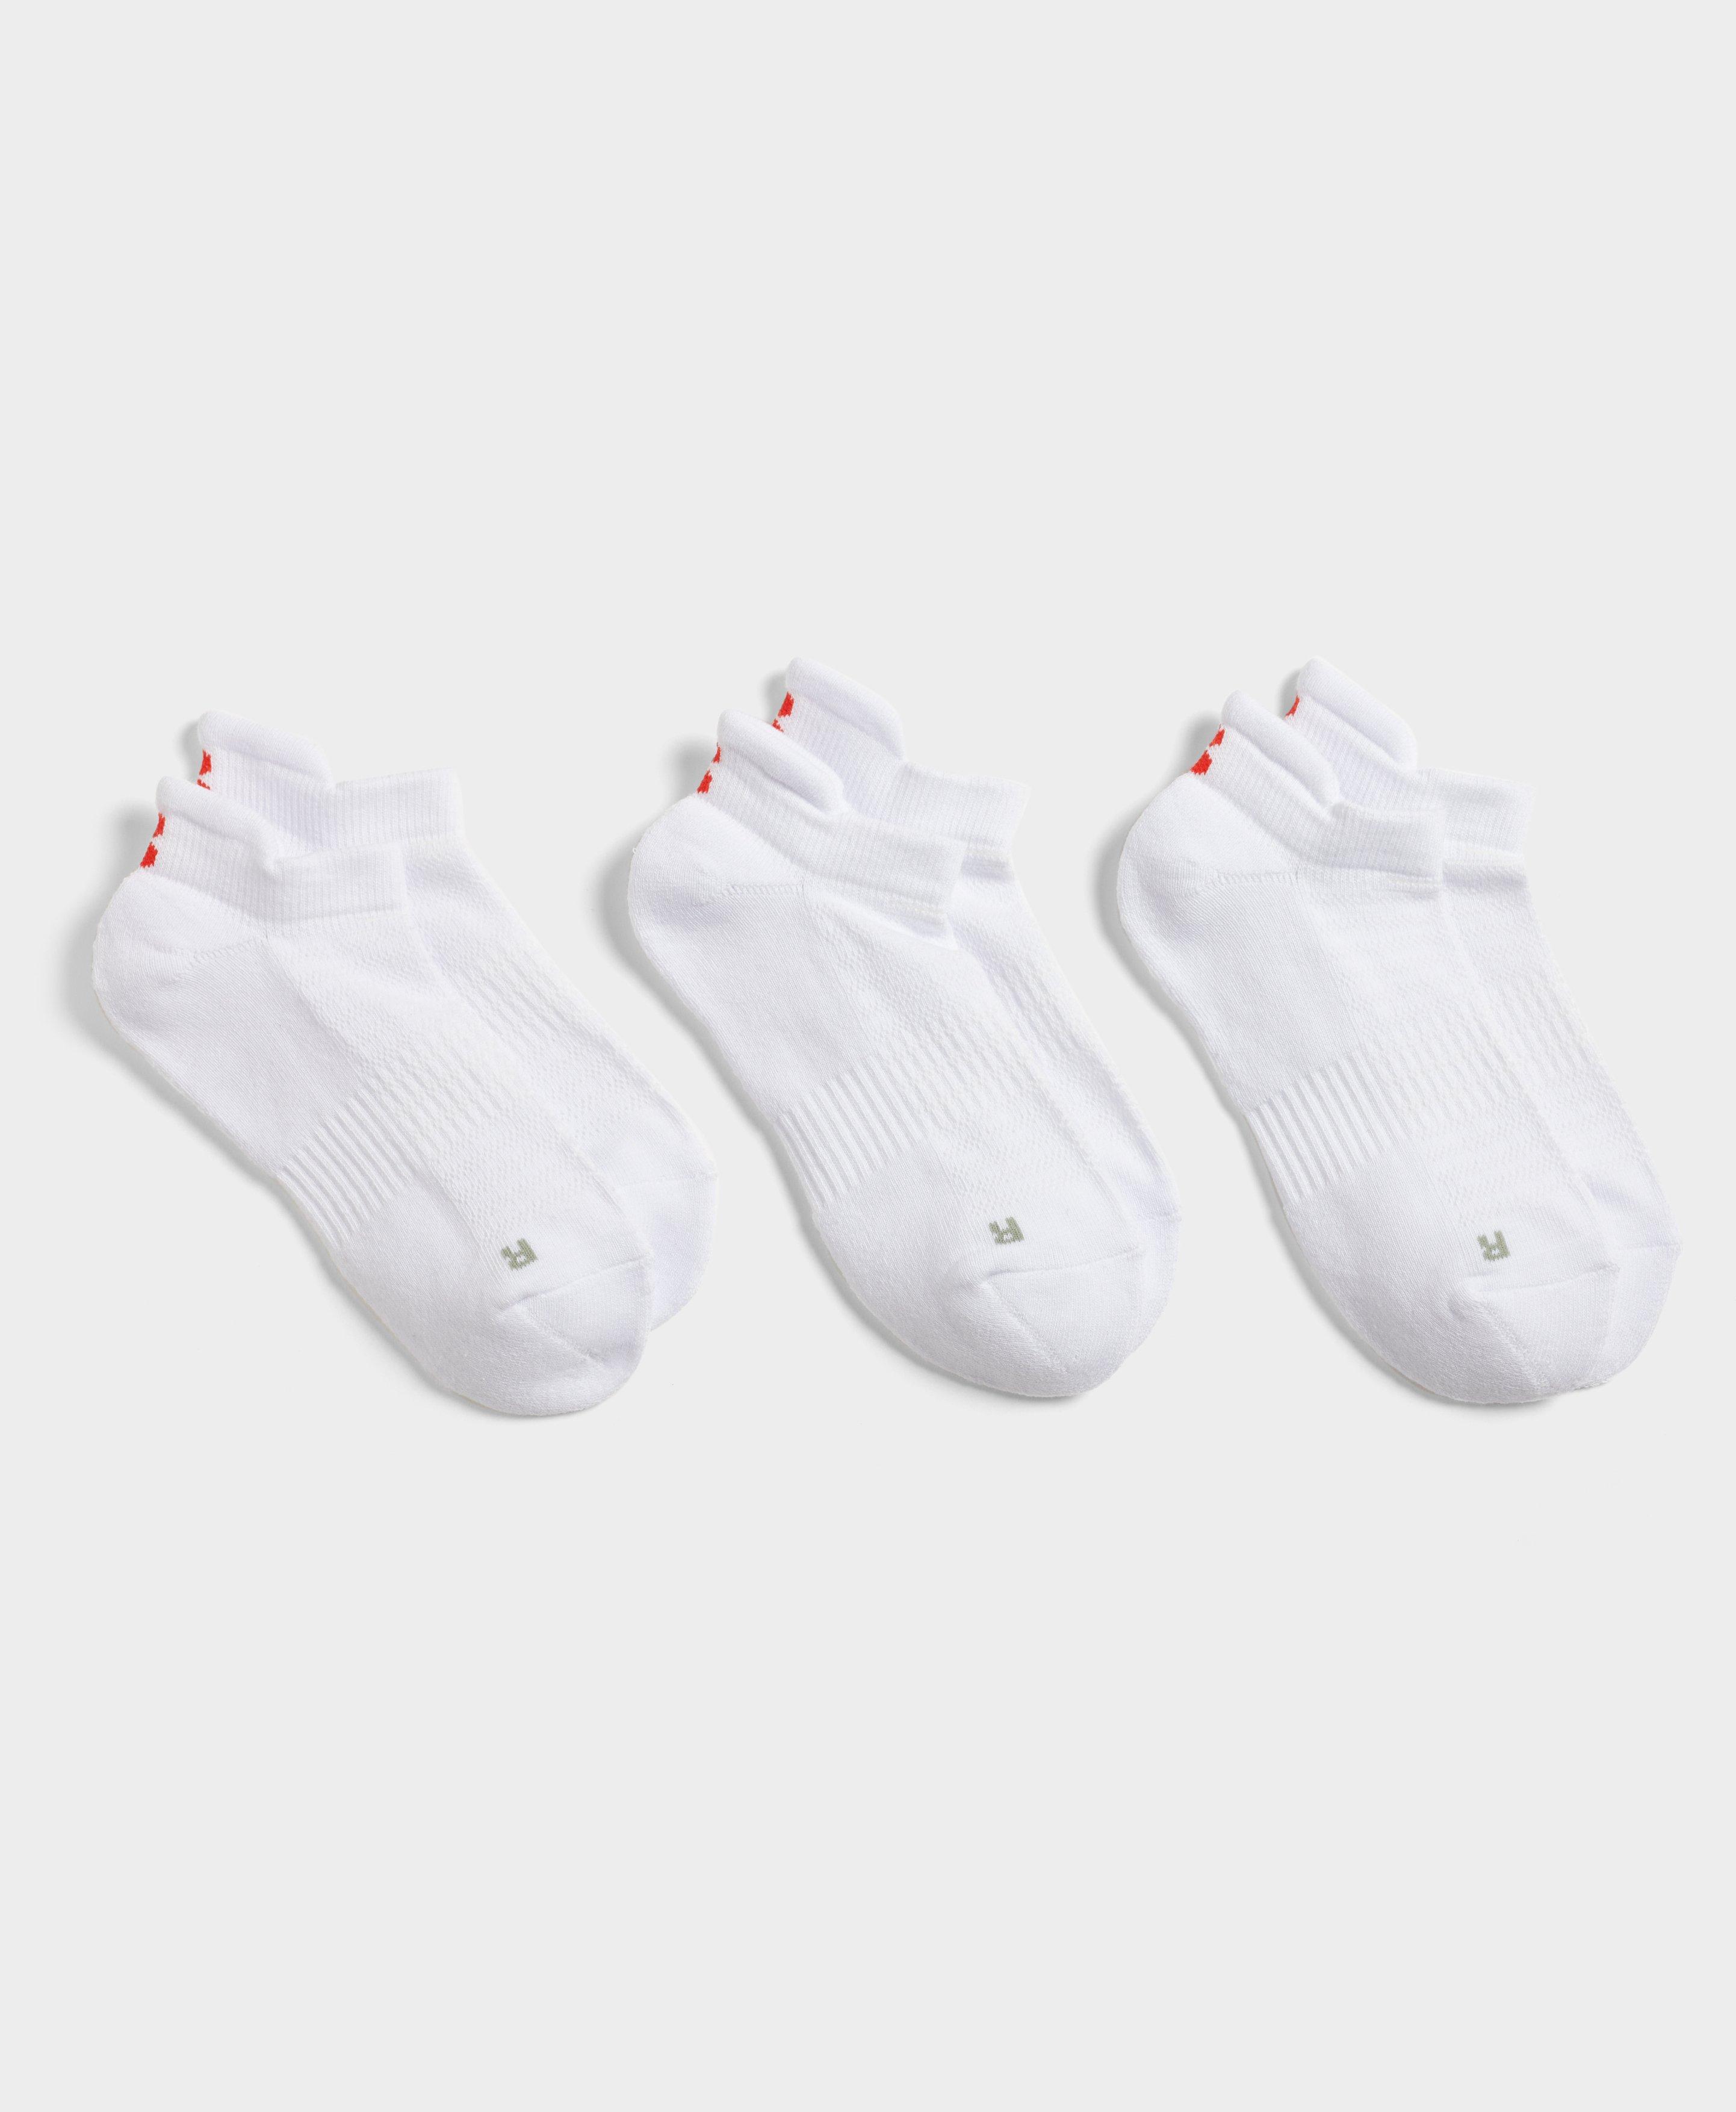 Purchase wholesale reformer pilates socks. Free returns & net 60